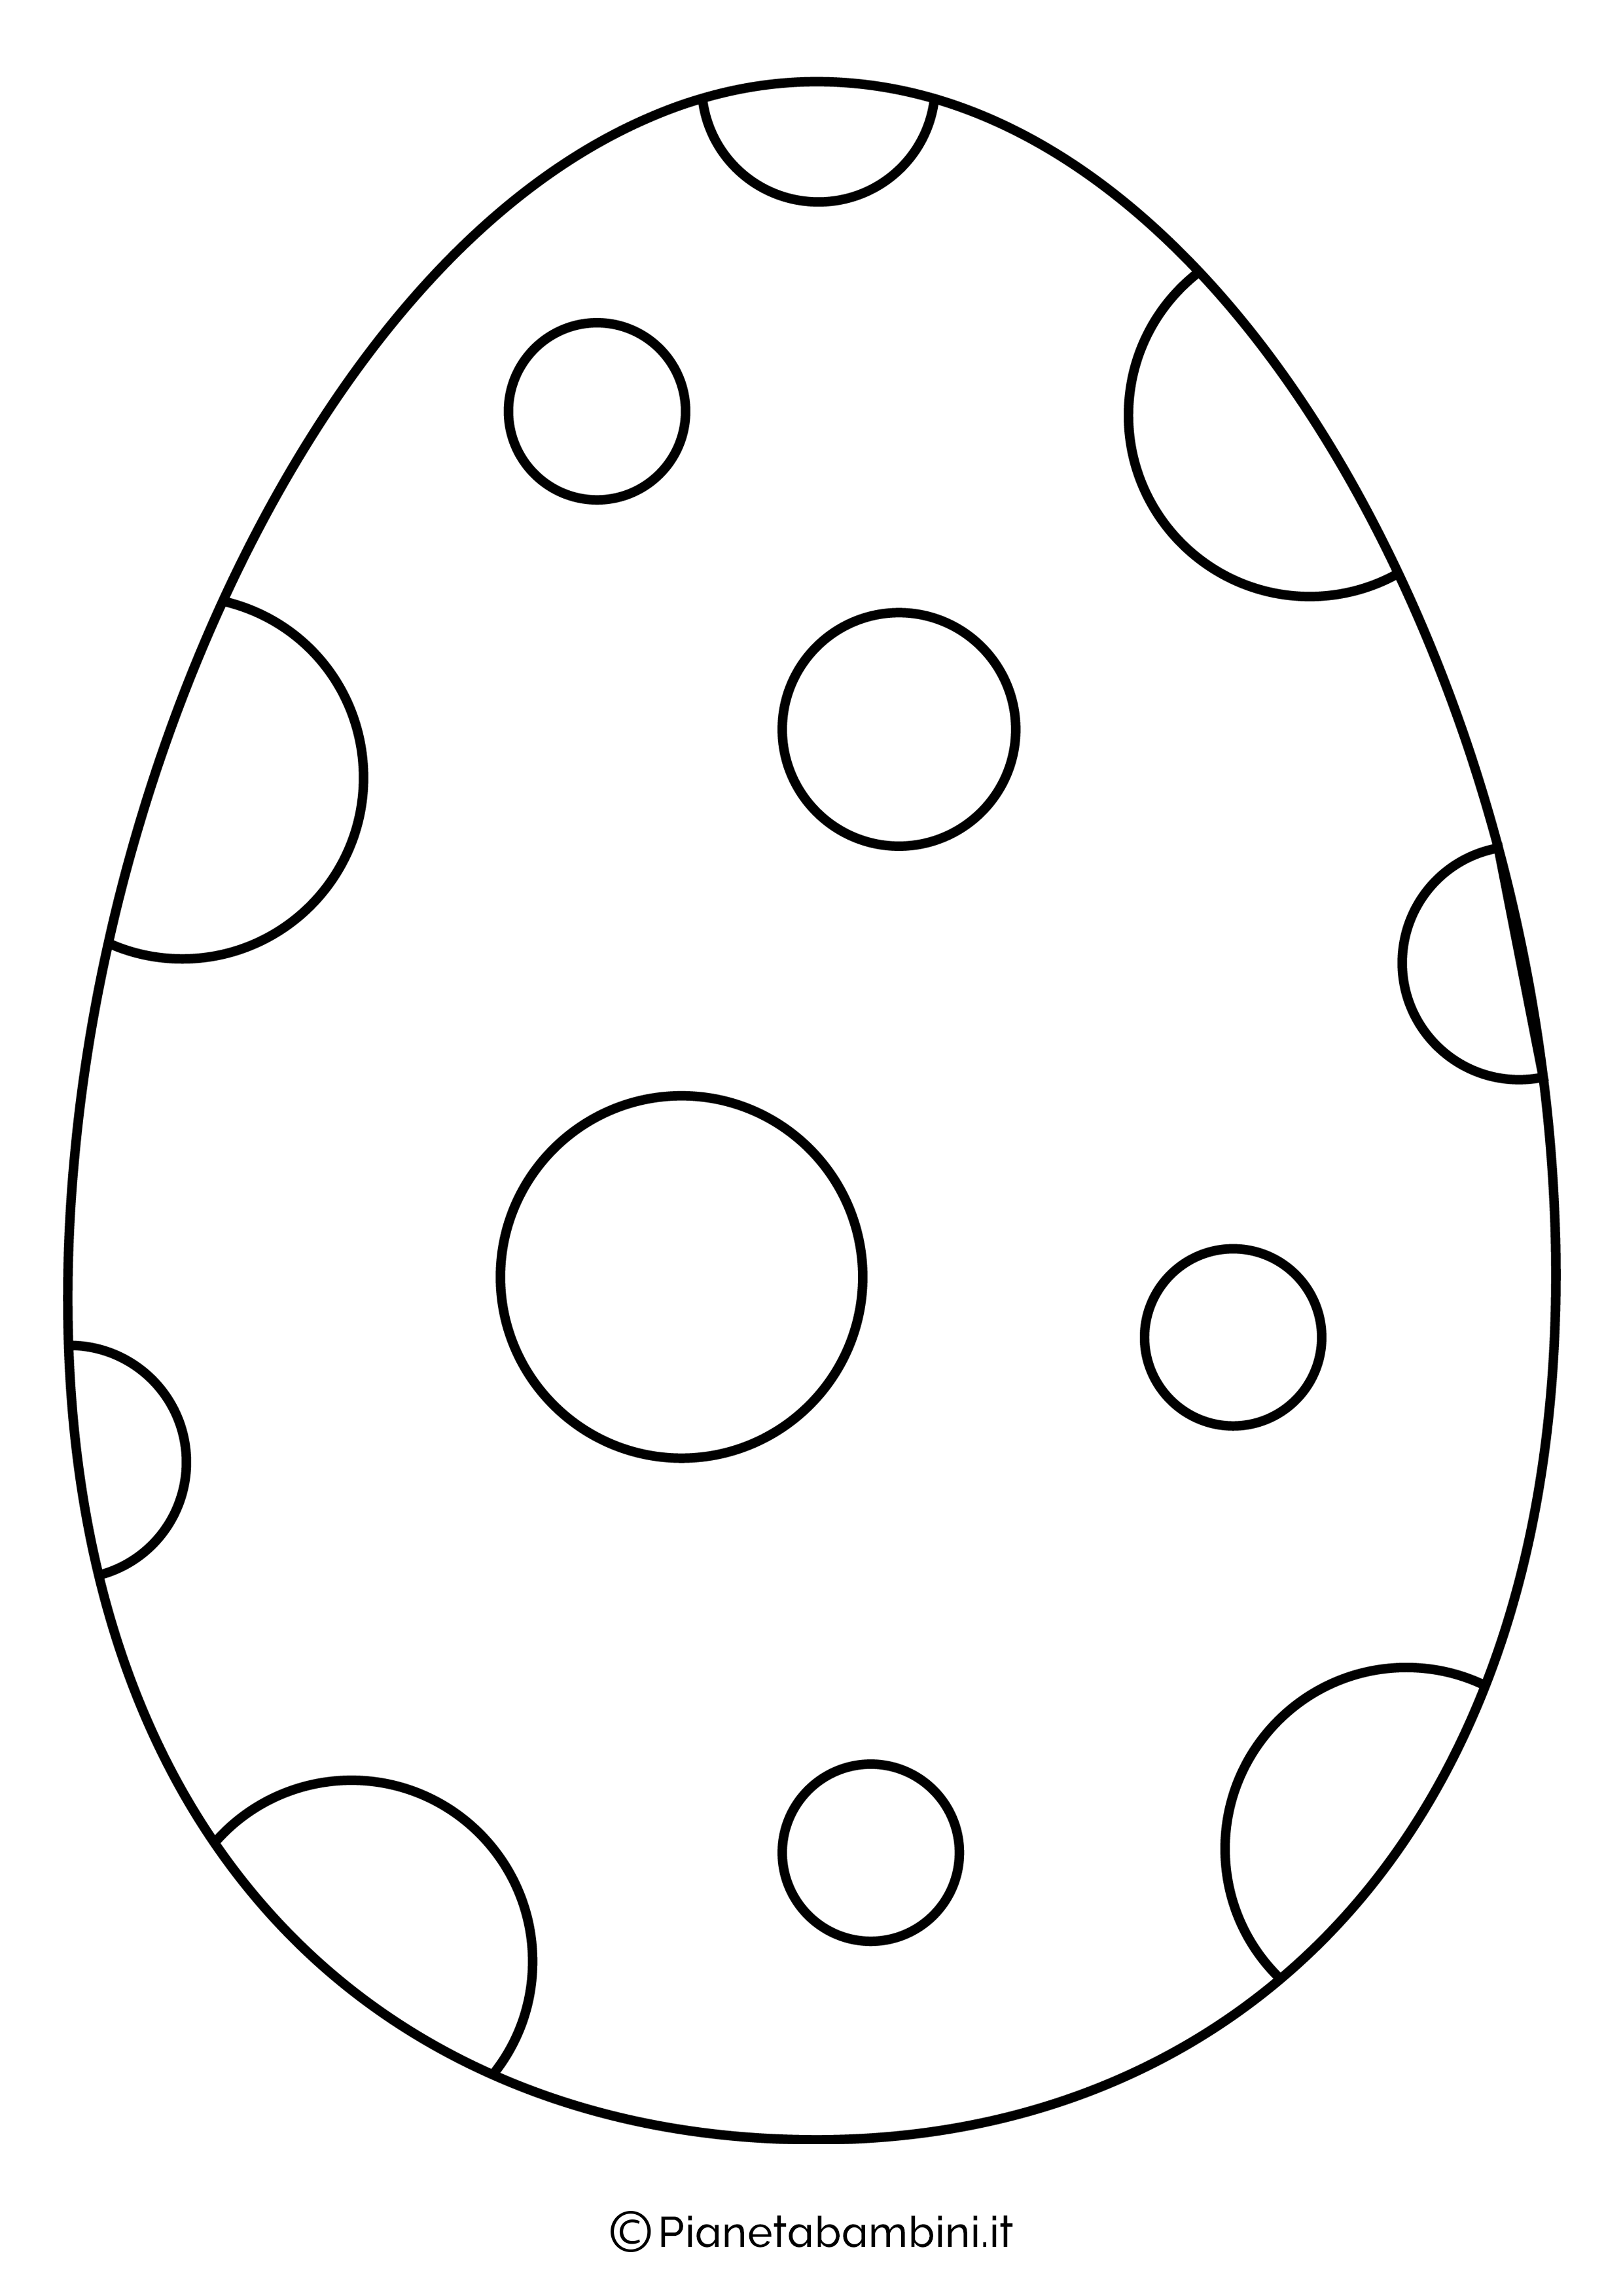 Disegno uovo di pasqua facile da colorare 5